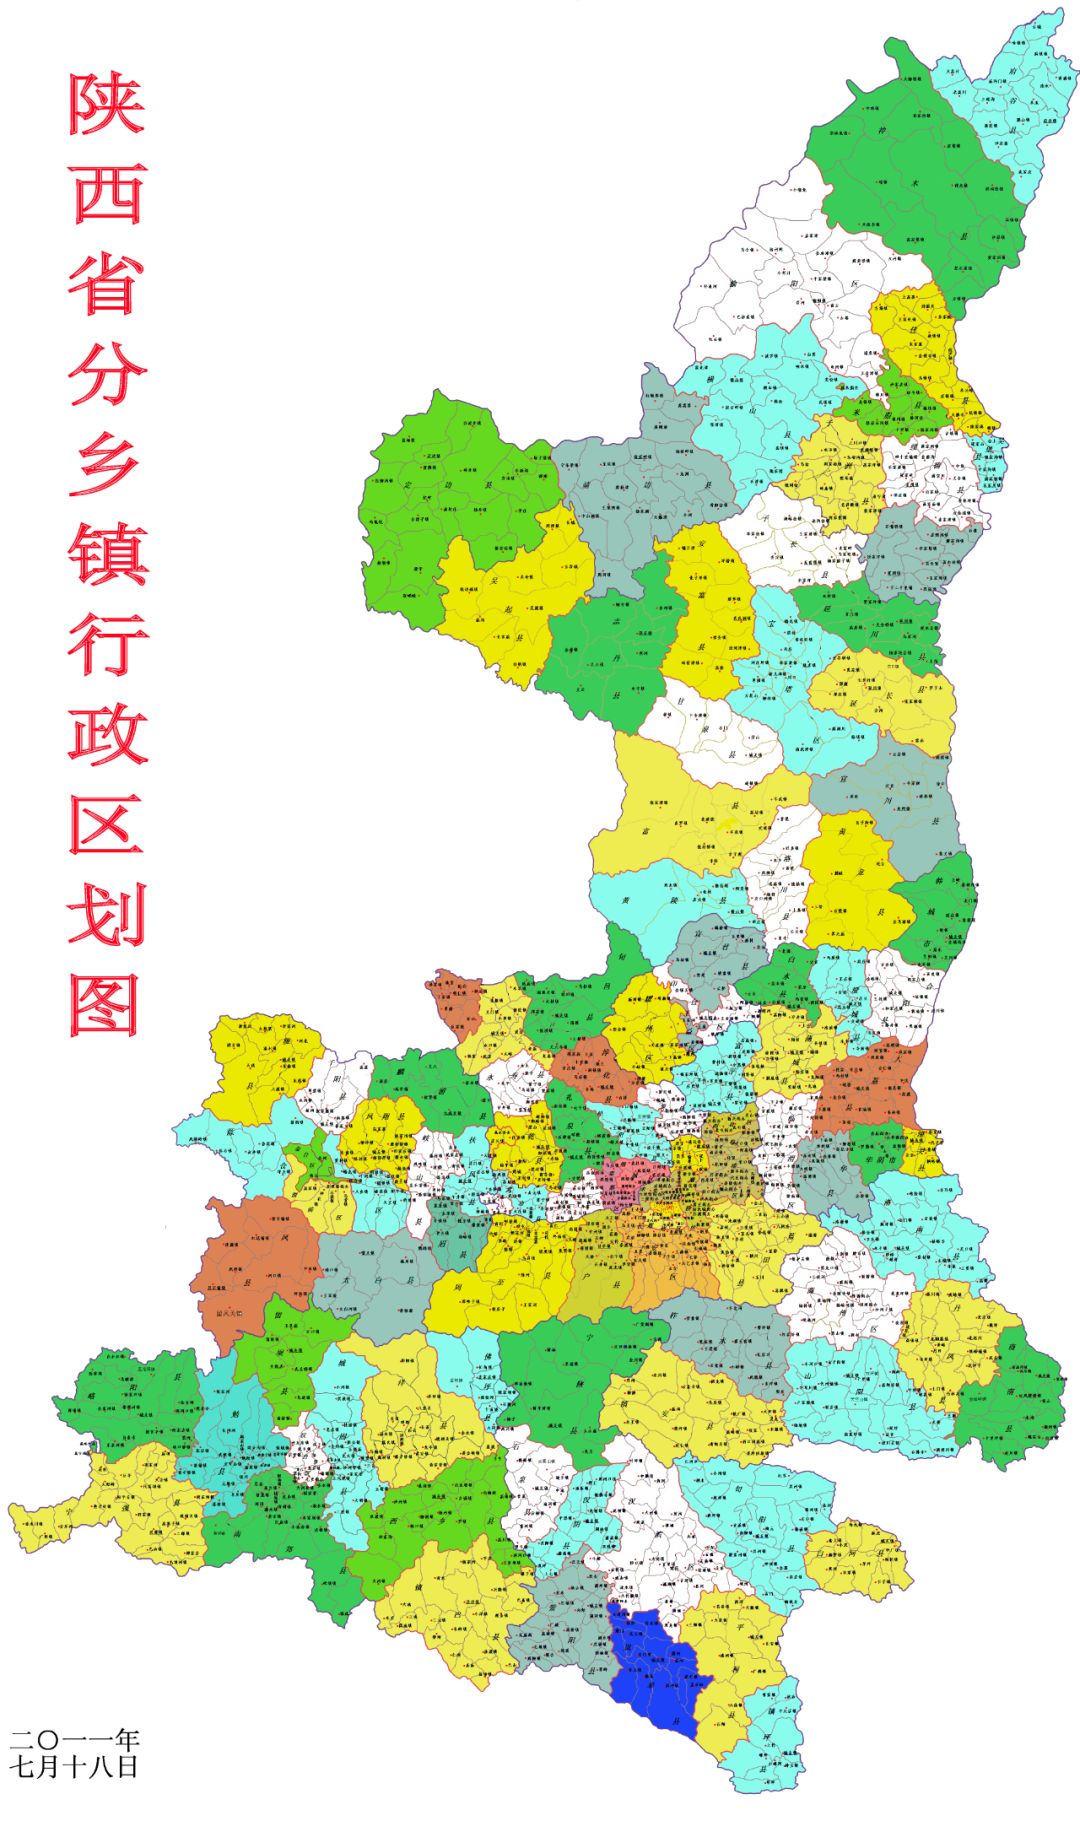 11幅陕西省各类高清地图绝对养眼漂亮现在不看也要先下来收藏